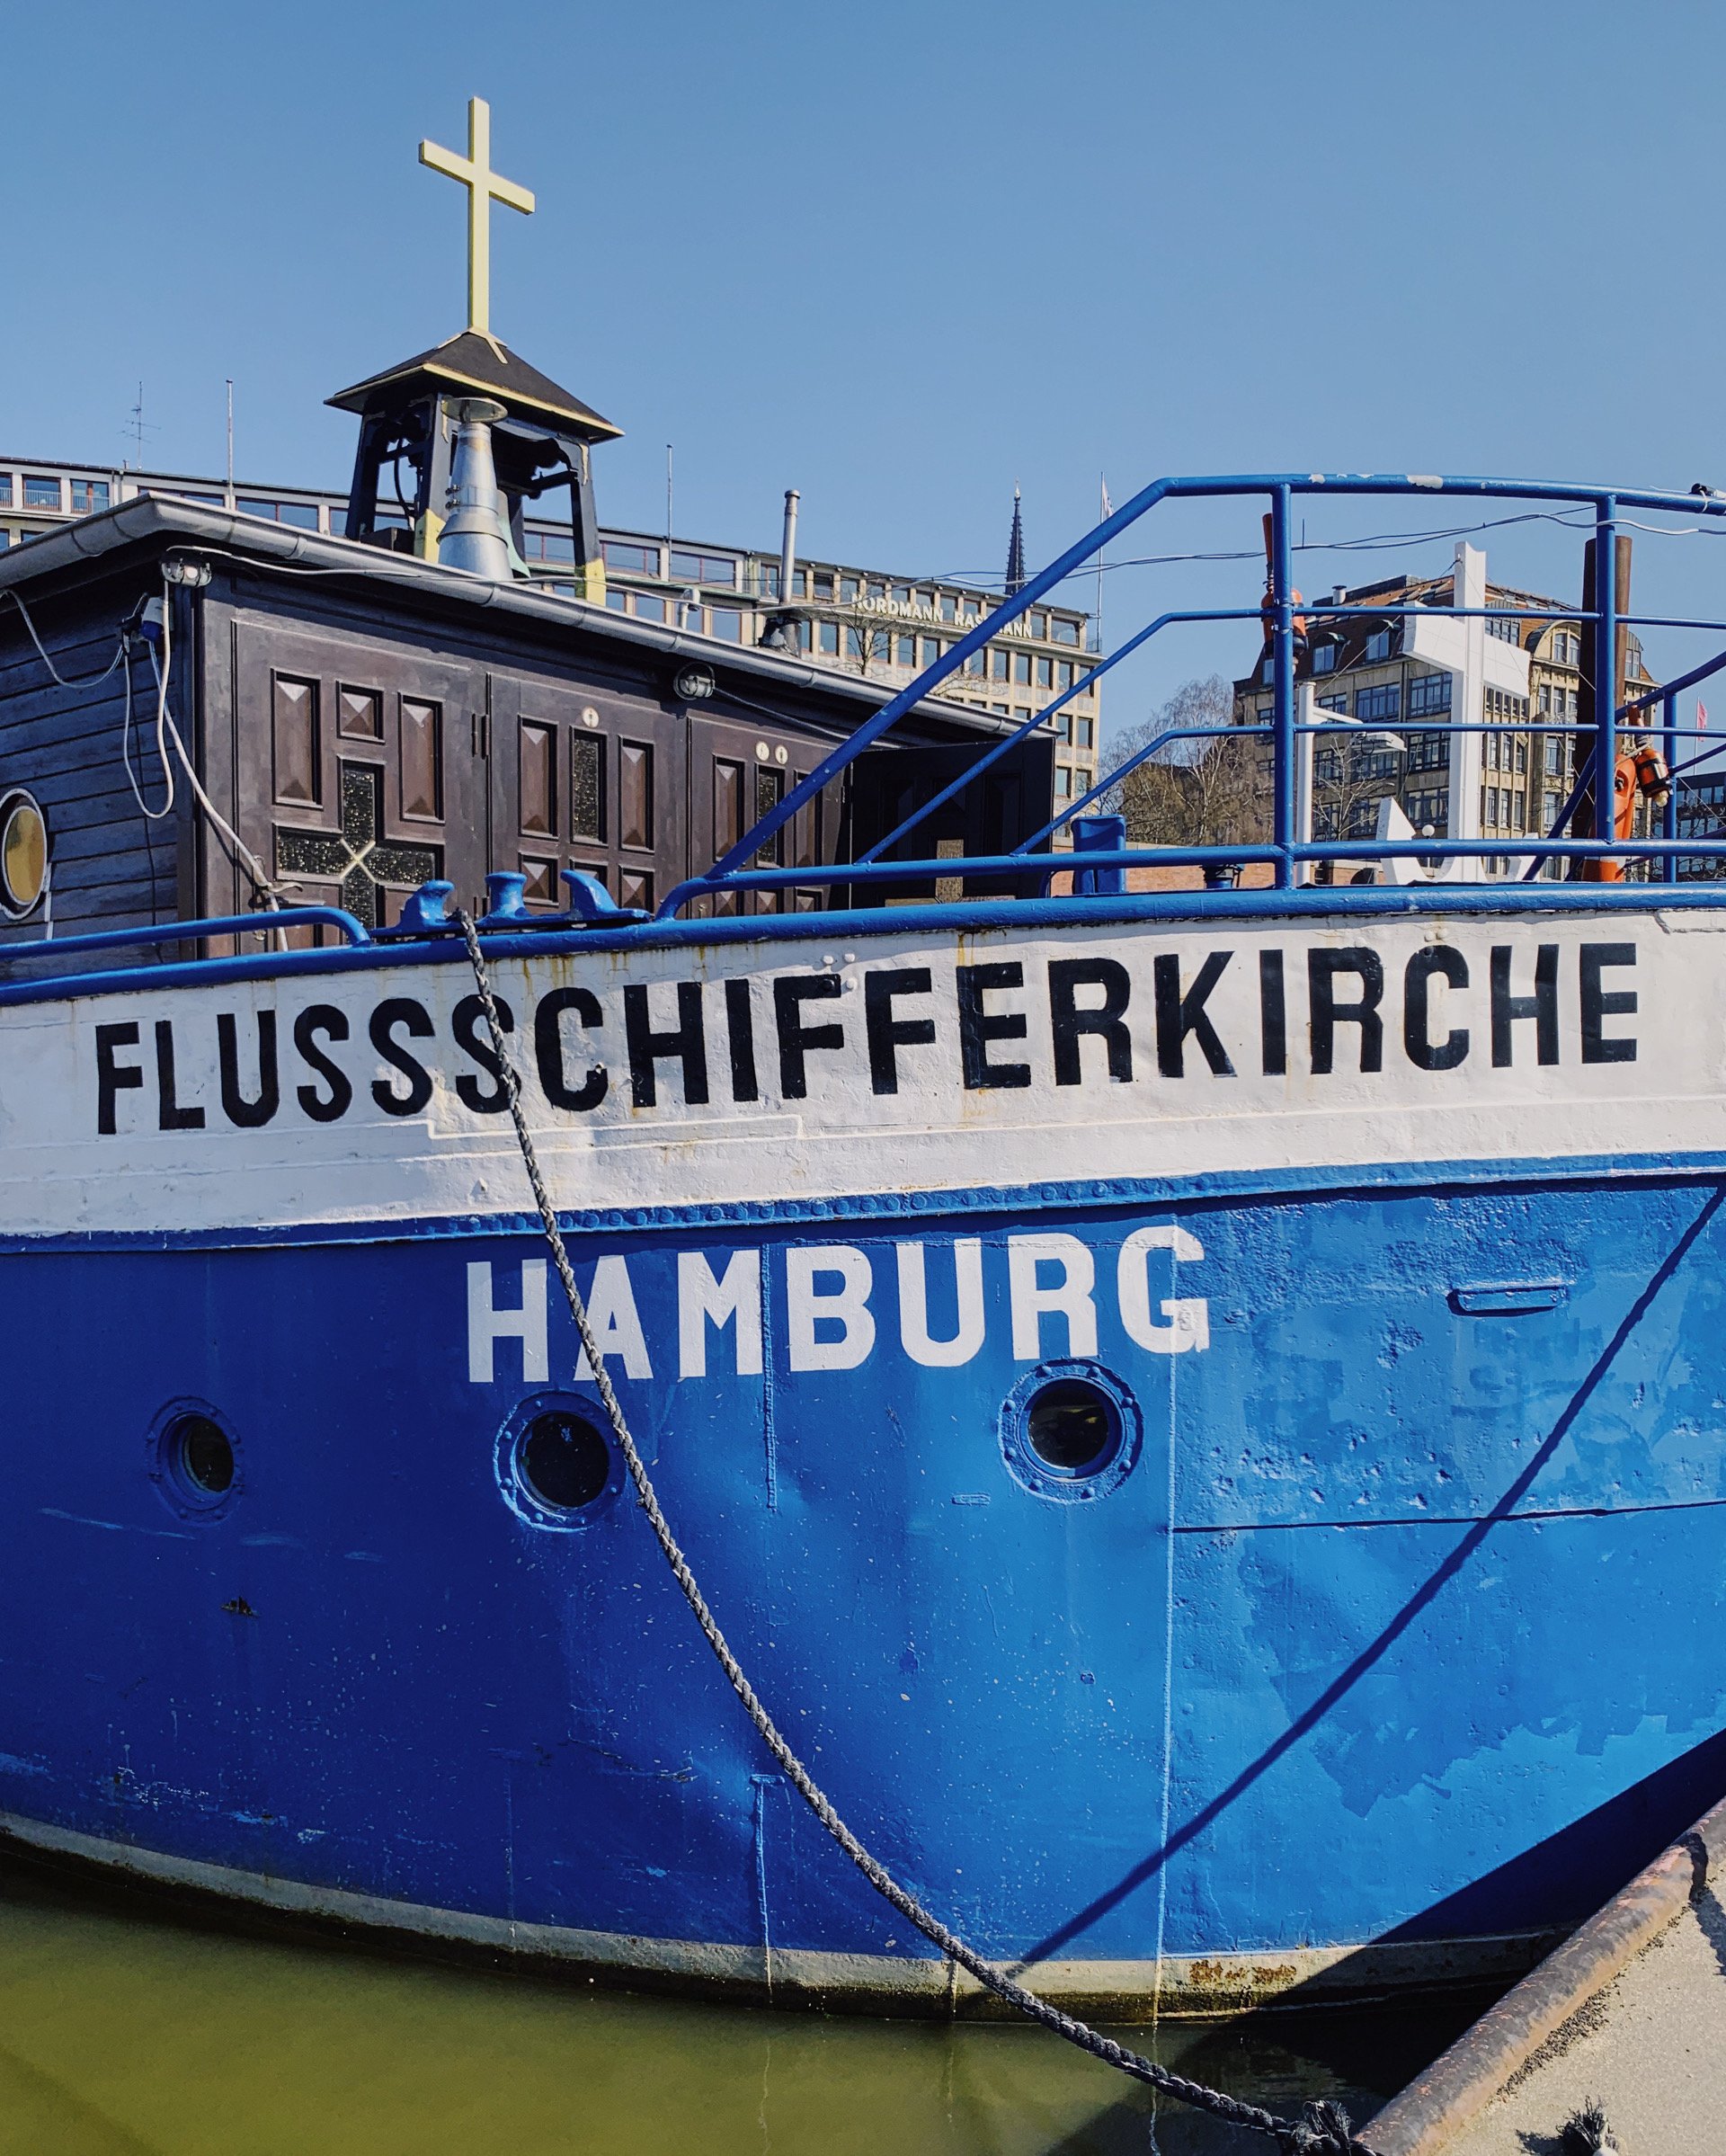 Schiffe in Hamburg: Flussschifferkirche